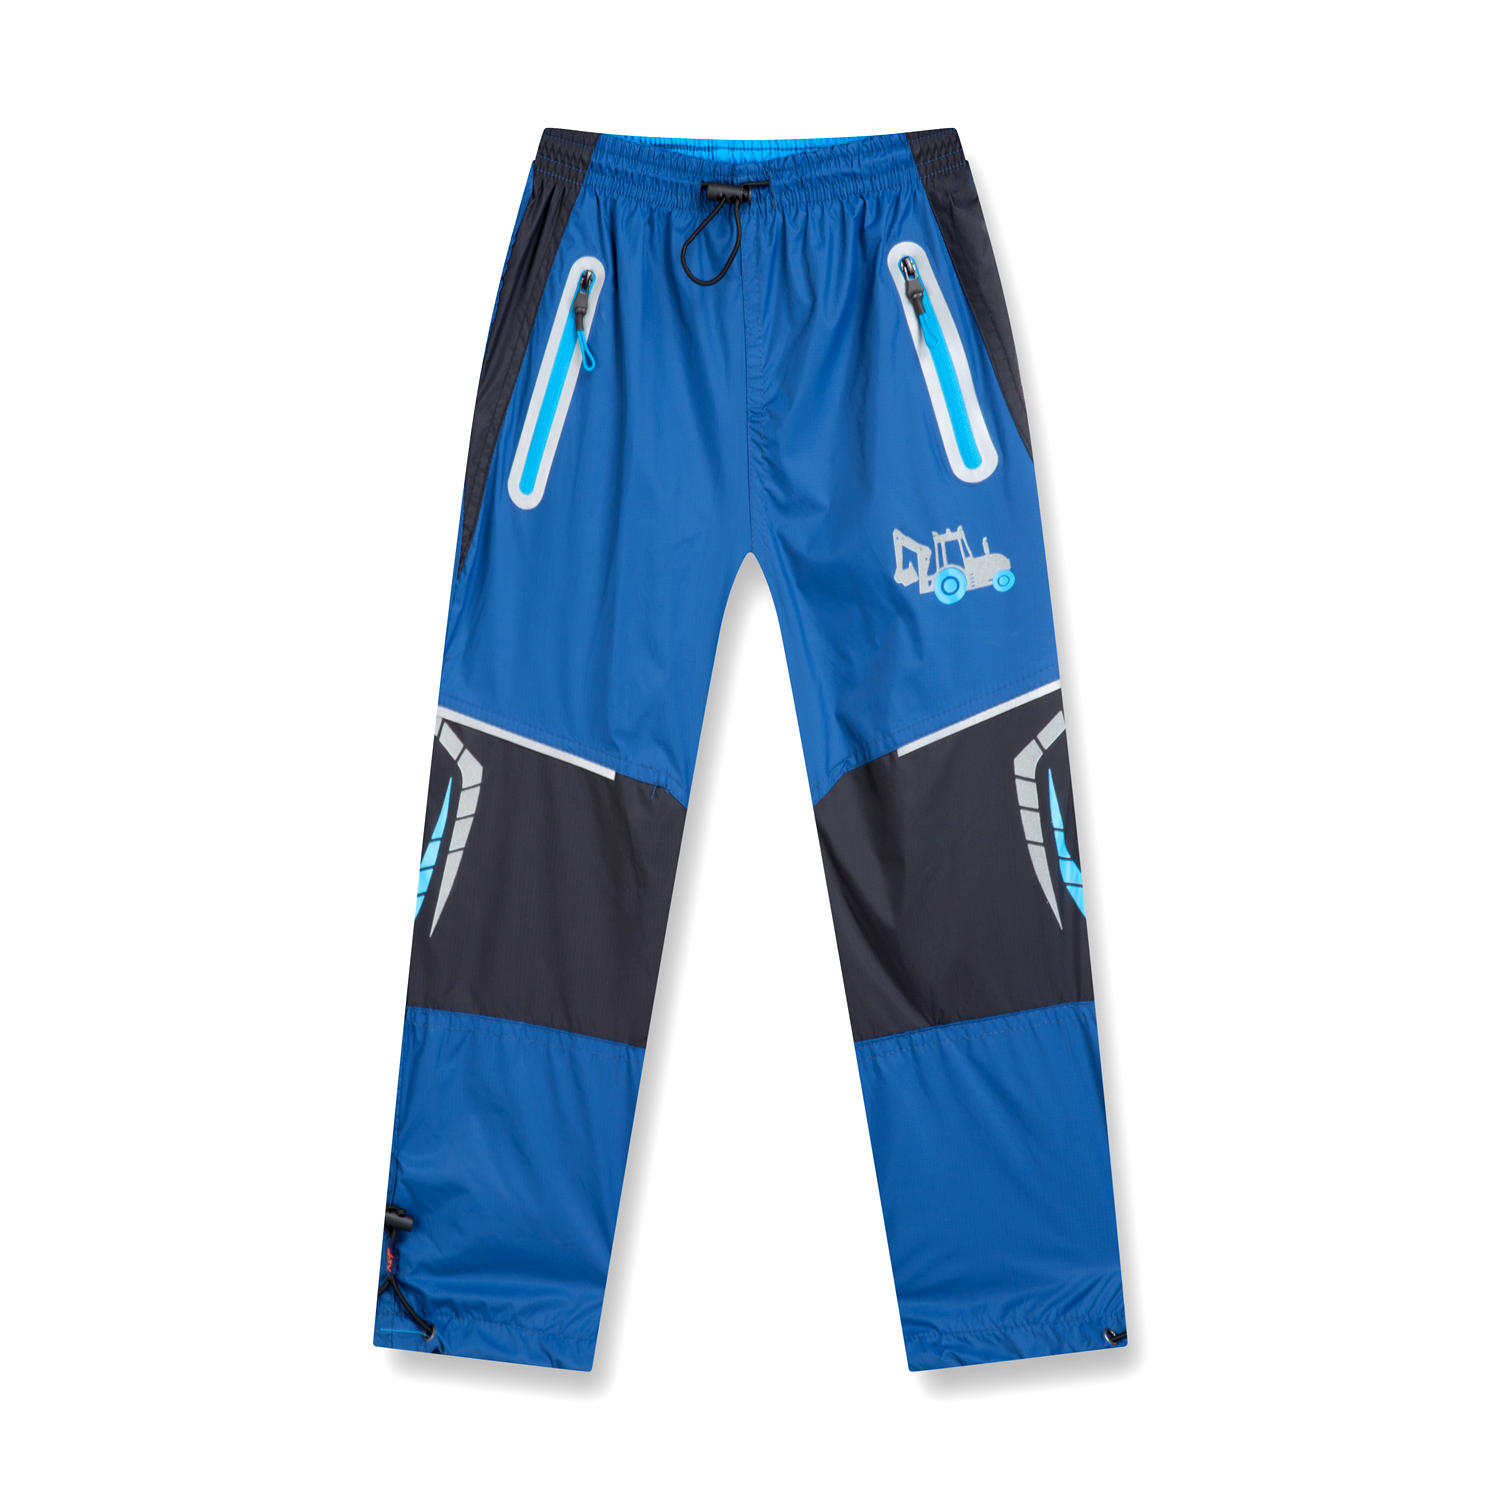 Chlapecké šusťákové kalhoty - KUGO HK9002, modrá Barva: Modrá, Velikost: 98